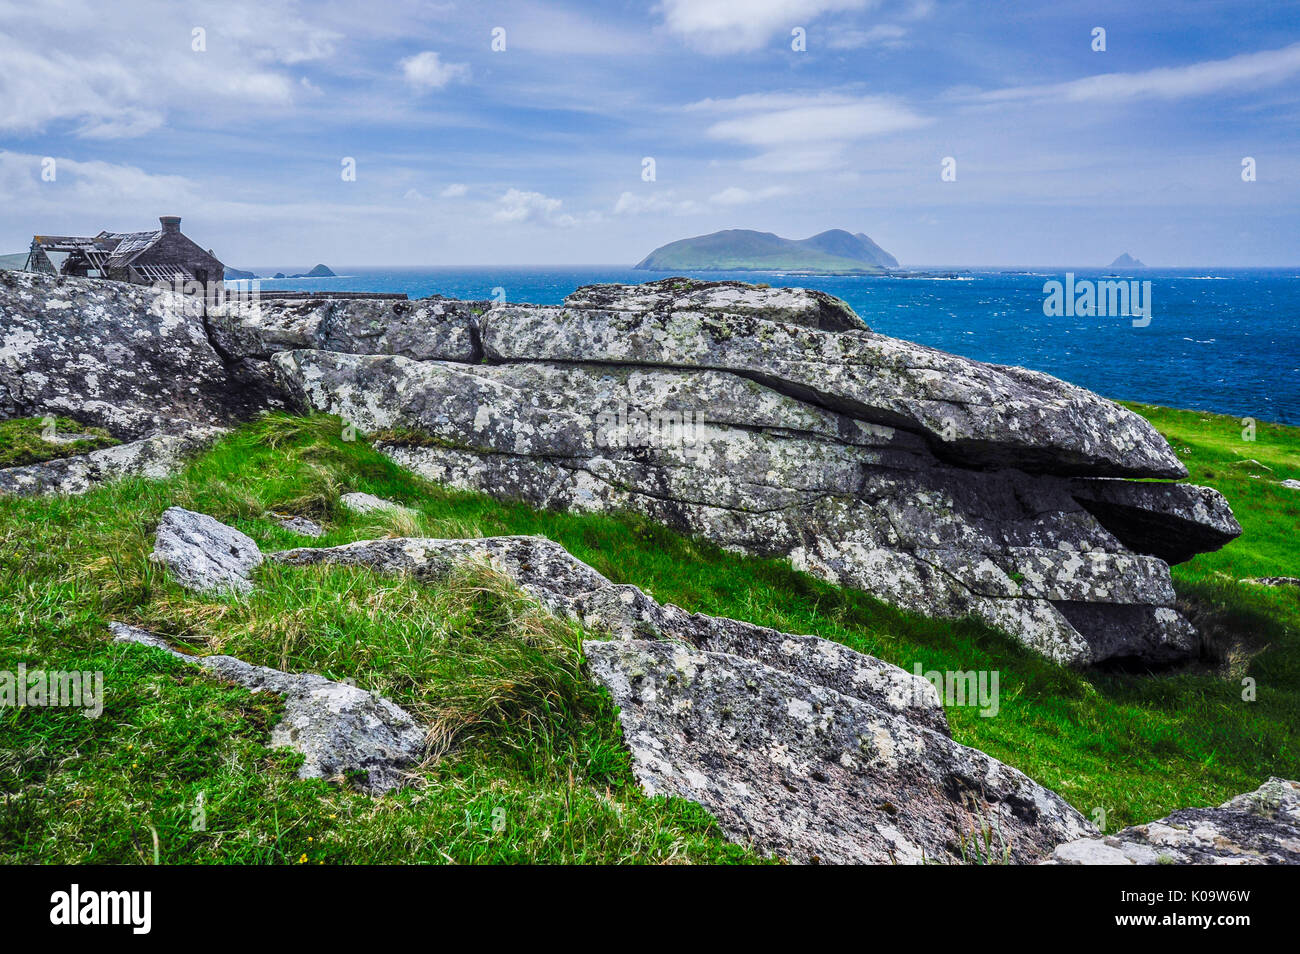 Une structure en ruine se trouve le long du littoral irlandais rocheux avec les îles Blasket dans l'arrière-plan Banque D'Images